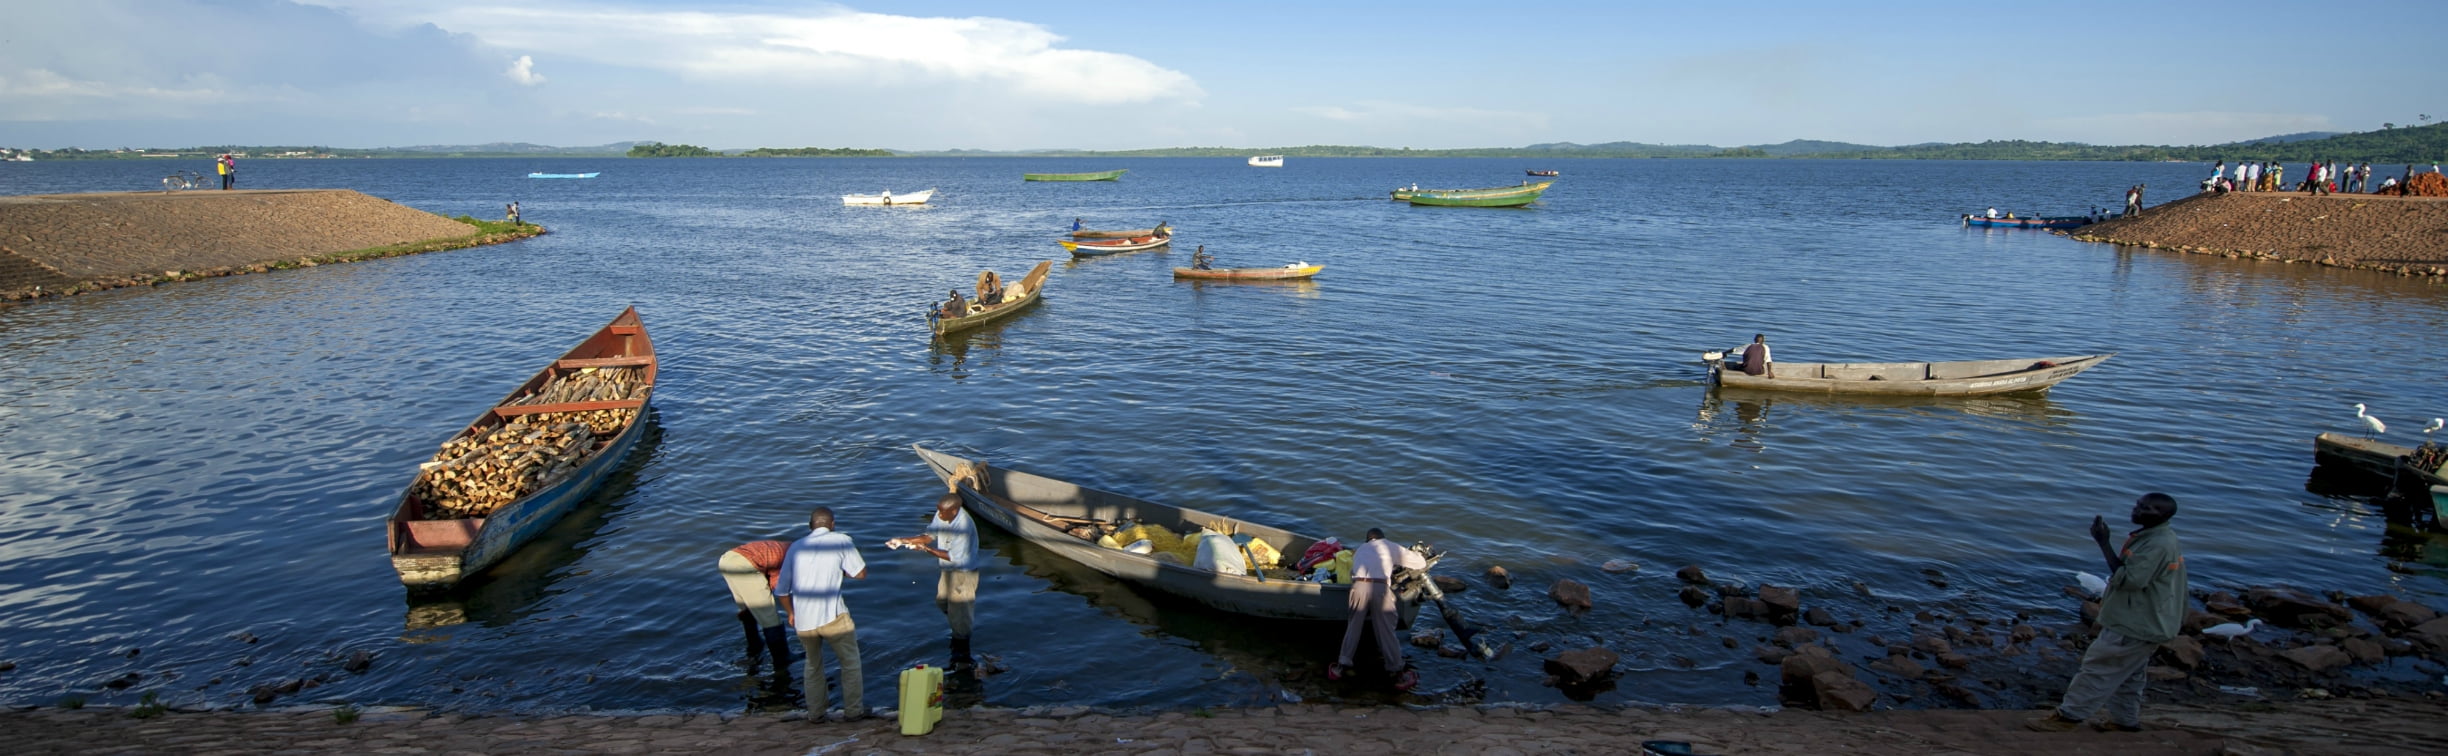 Handelaren op het Victoriameer in Oeganda